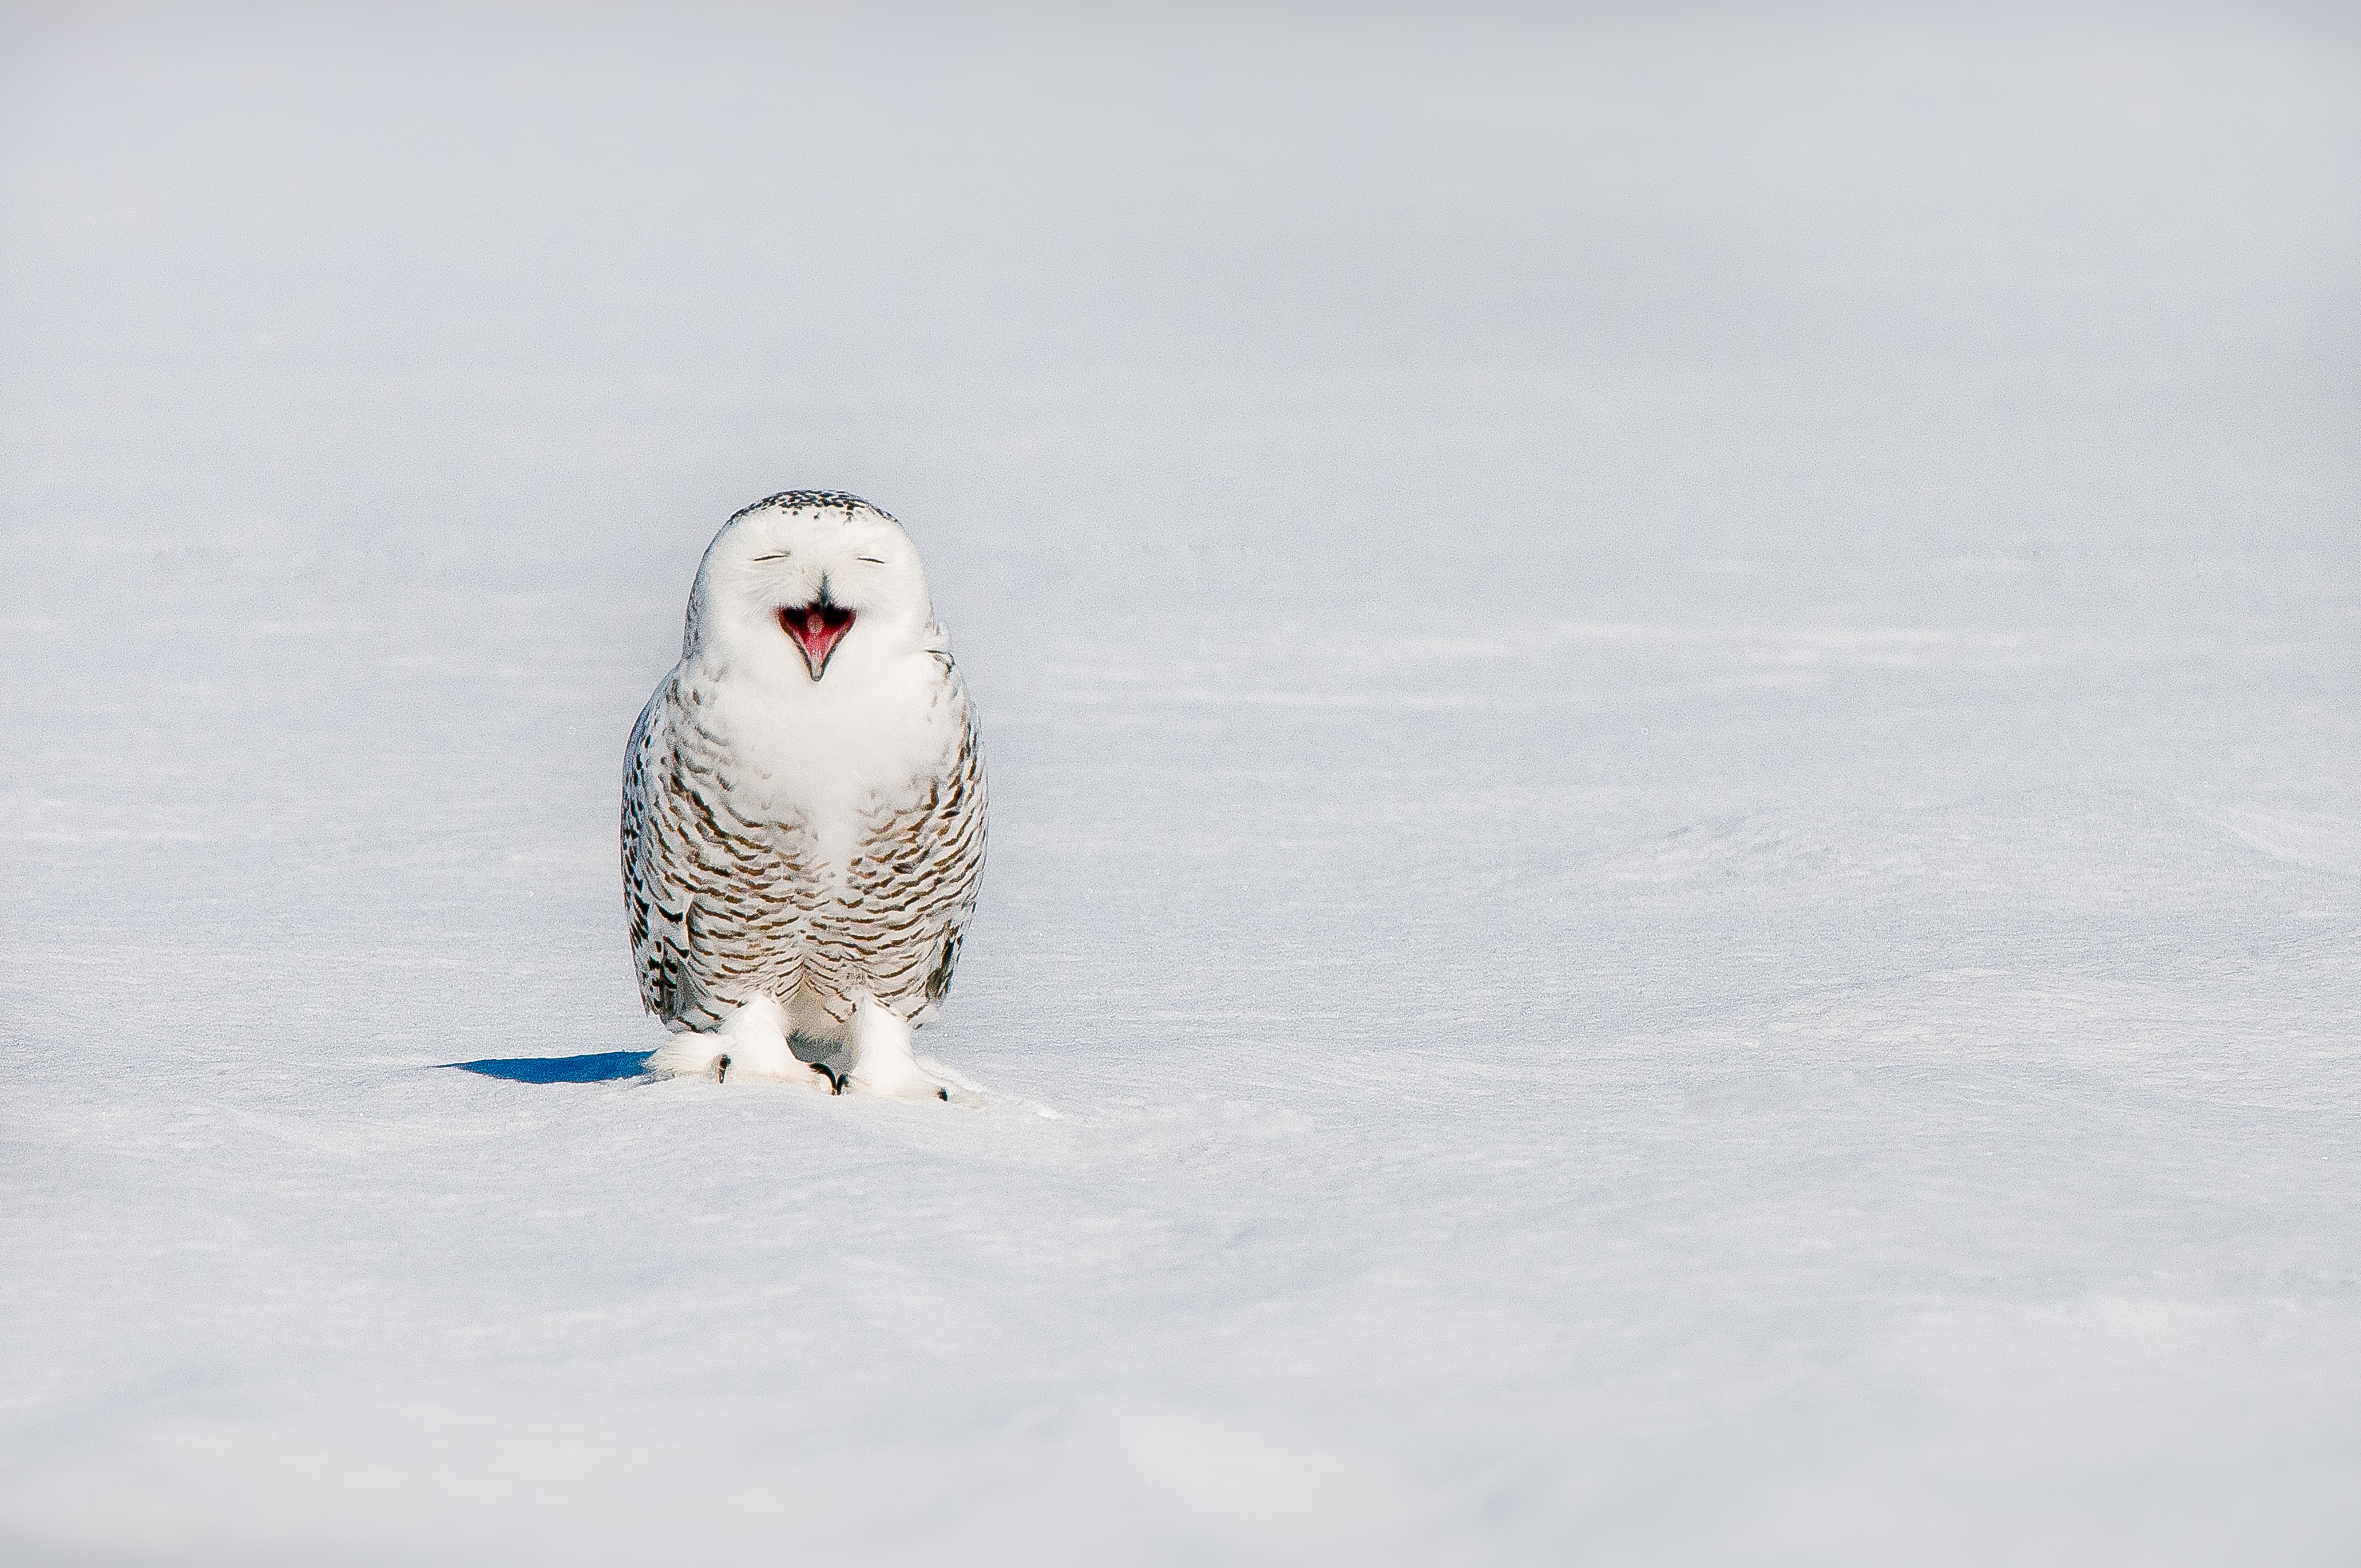 Snowy owl (Bubo scandiacus) yawning on snowy field in winter, Quebec, Canada